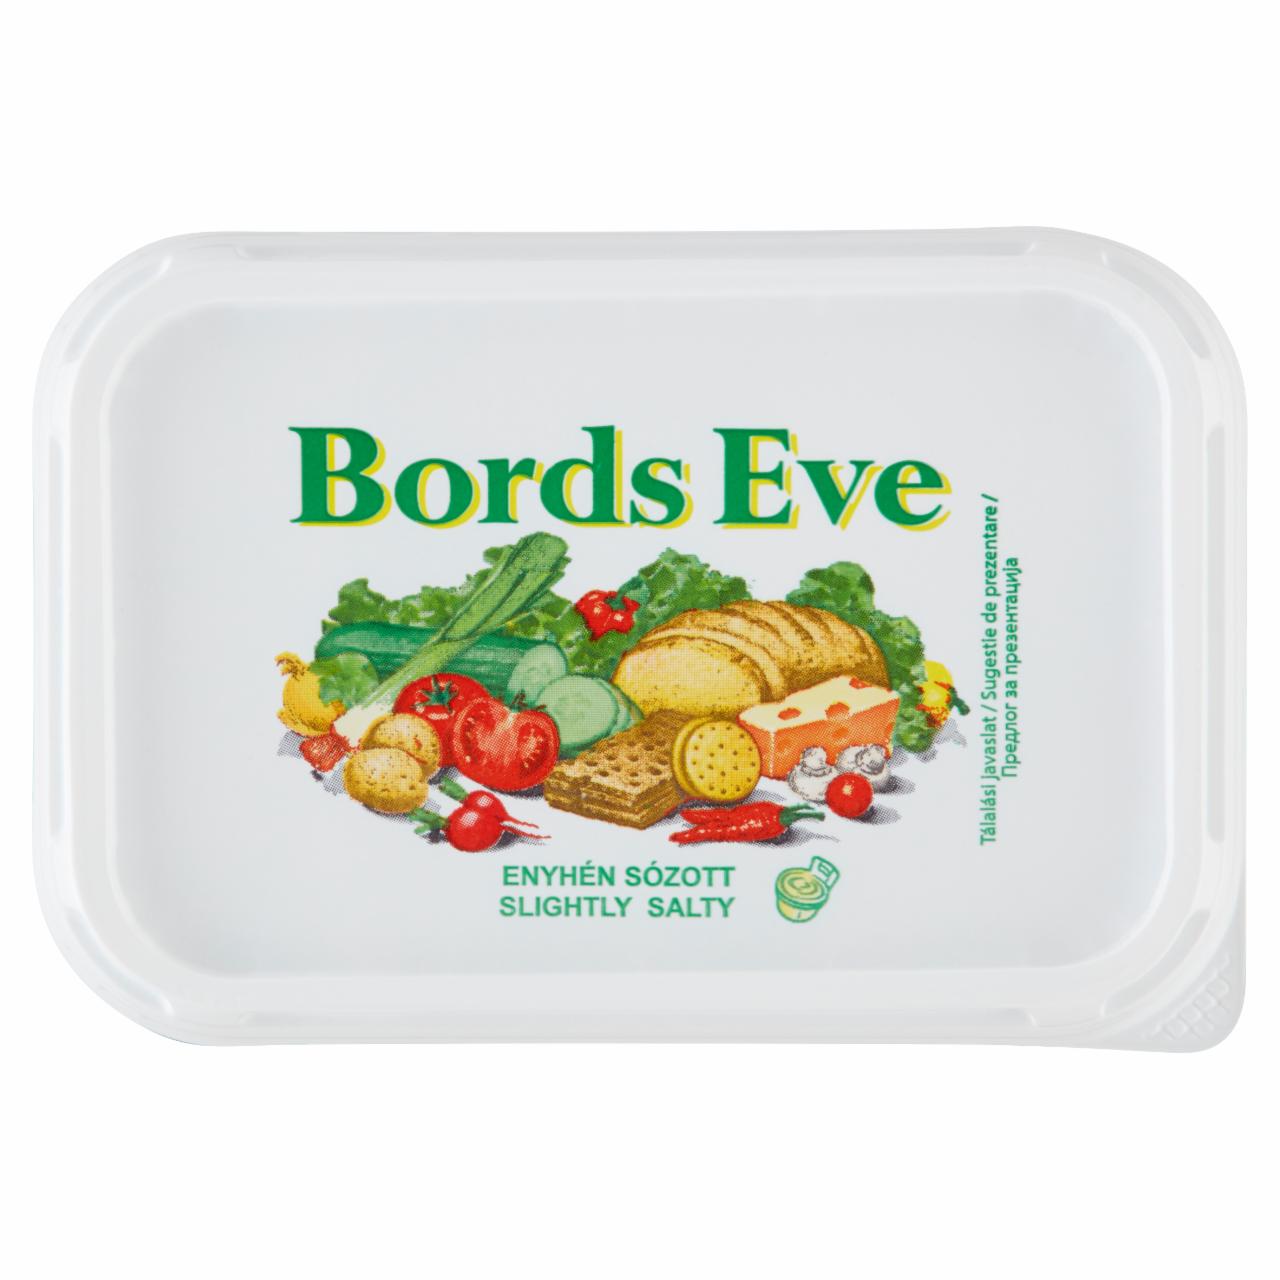 Képek - Bords Eve enyhén sózott, csökkentett zsírtartalmú margarin 250 g